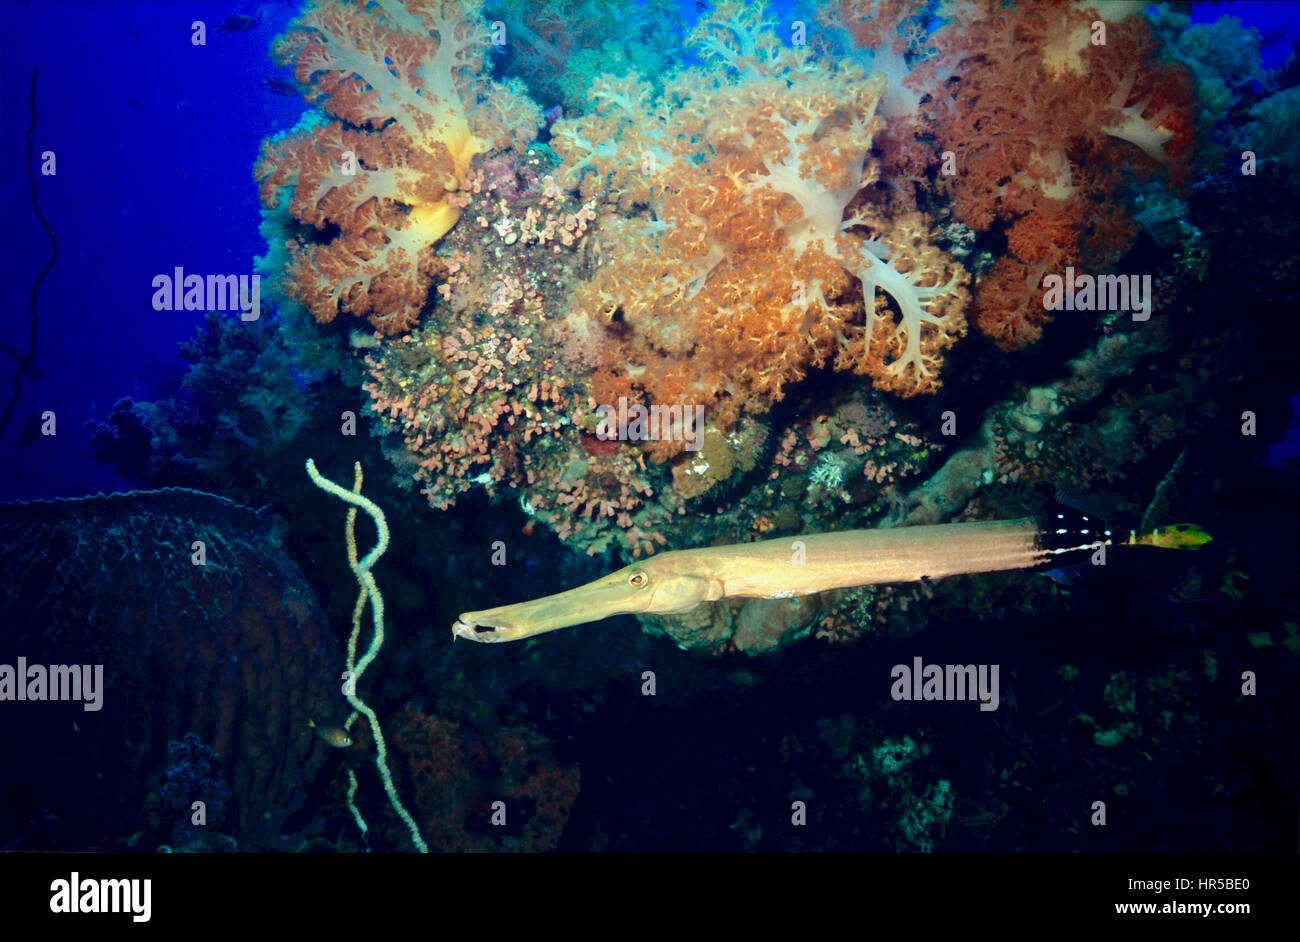 Trumpetfish (Aulostomus maculatus) sotto un affioramento di corallo. I membri di questa specie sono descritte accuratamente come in agguato-e-lunge i cacciatori. Acque di Tobago. Foto Stock